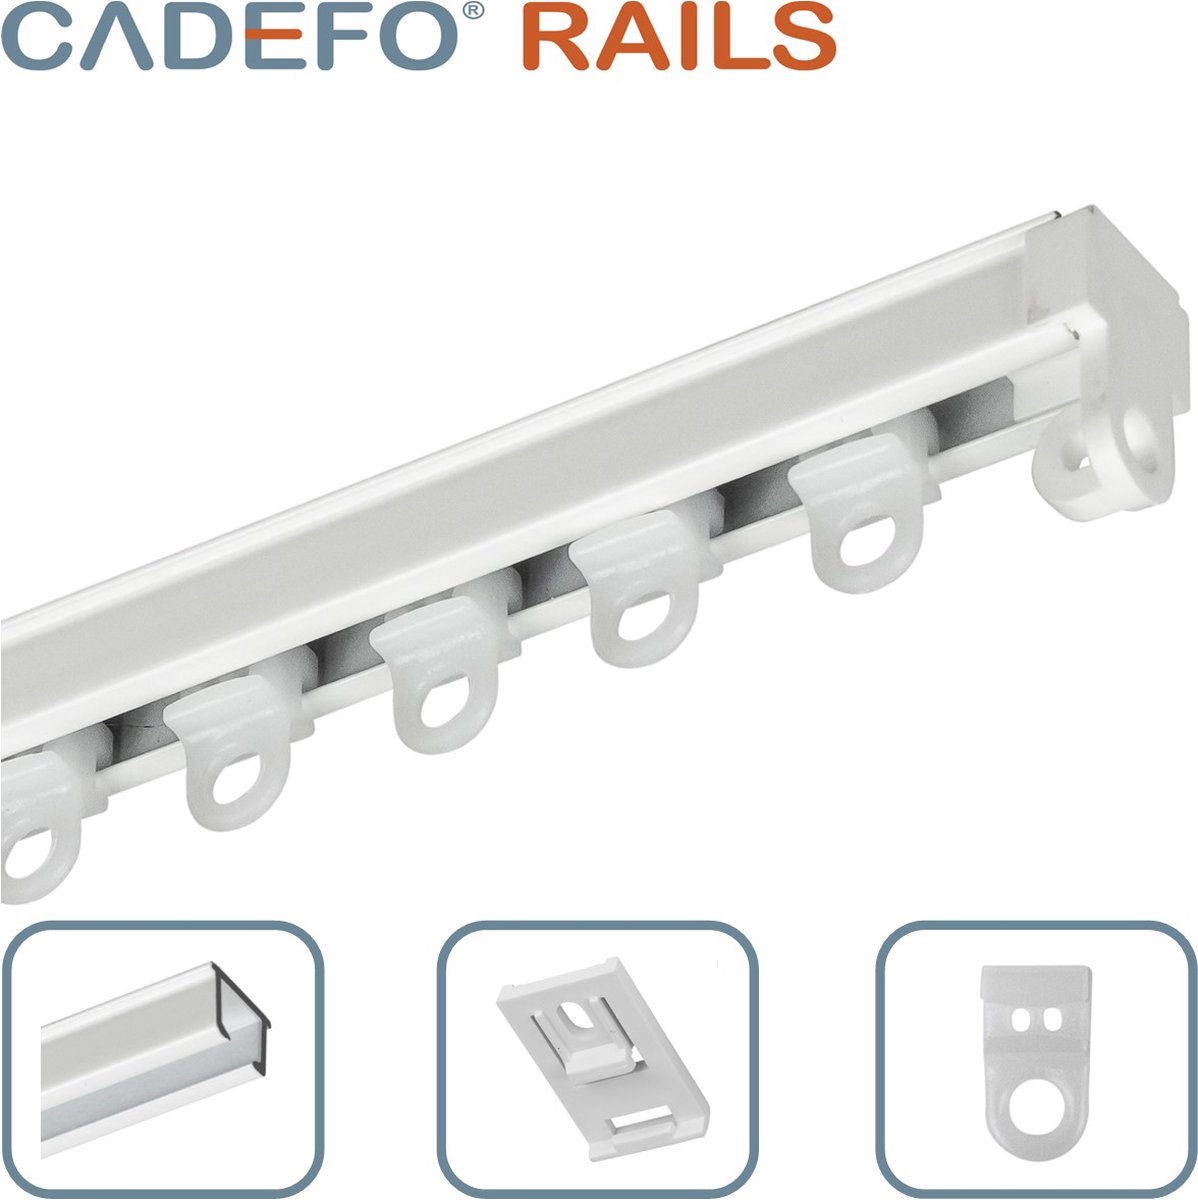 CADEFO RAILS (501 - 550 cm) Gordijnrails - Compleet op maat! - UIT 1 STUK - Leverbaar tot 6 meter - Plafondbevestiging - Lengte 519 cm